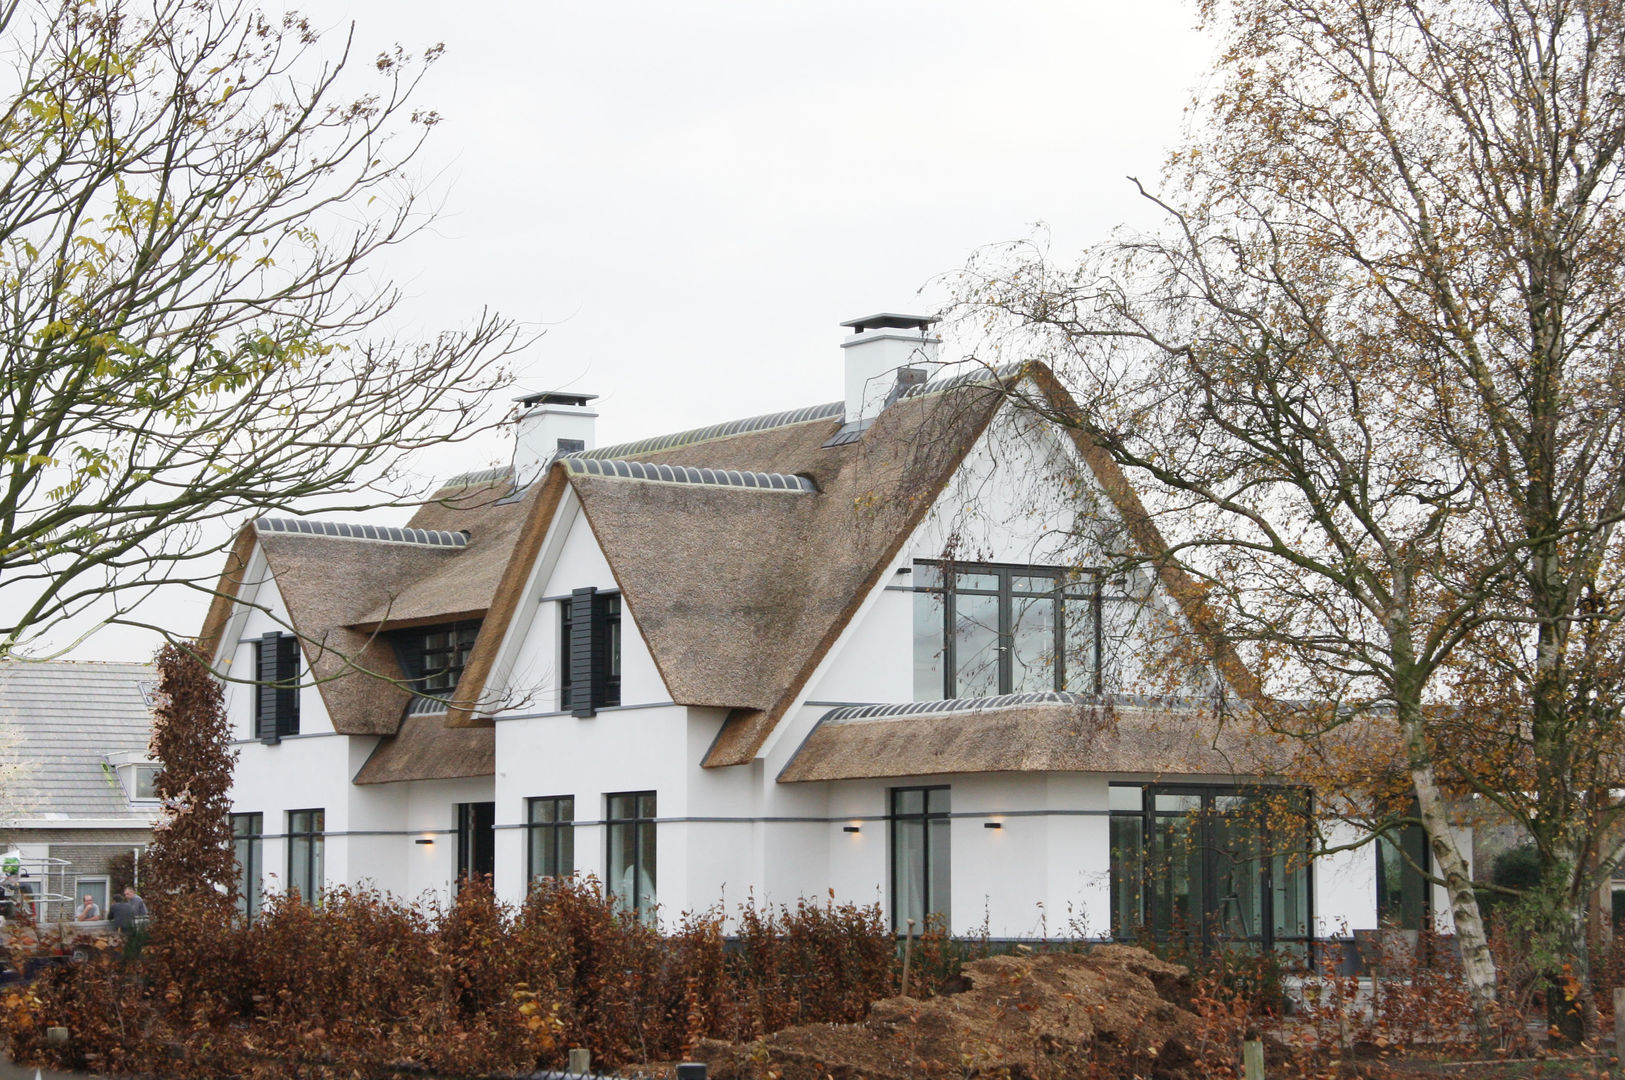 Witte villa met rieten dak, Arend Groenewegen Architect BNA Arend Groenewegen Architect BNA منازل